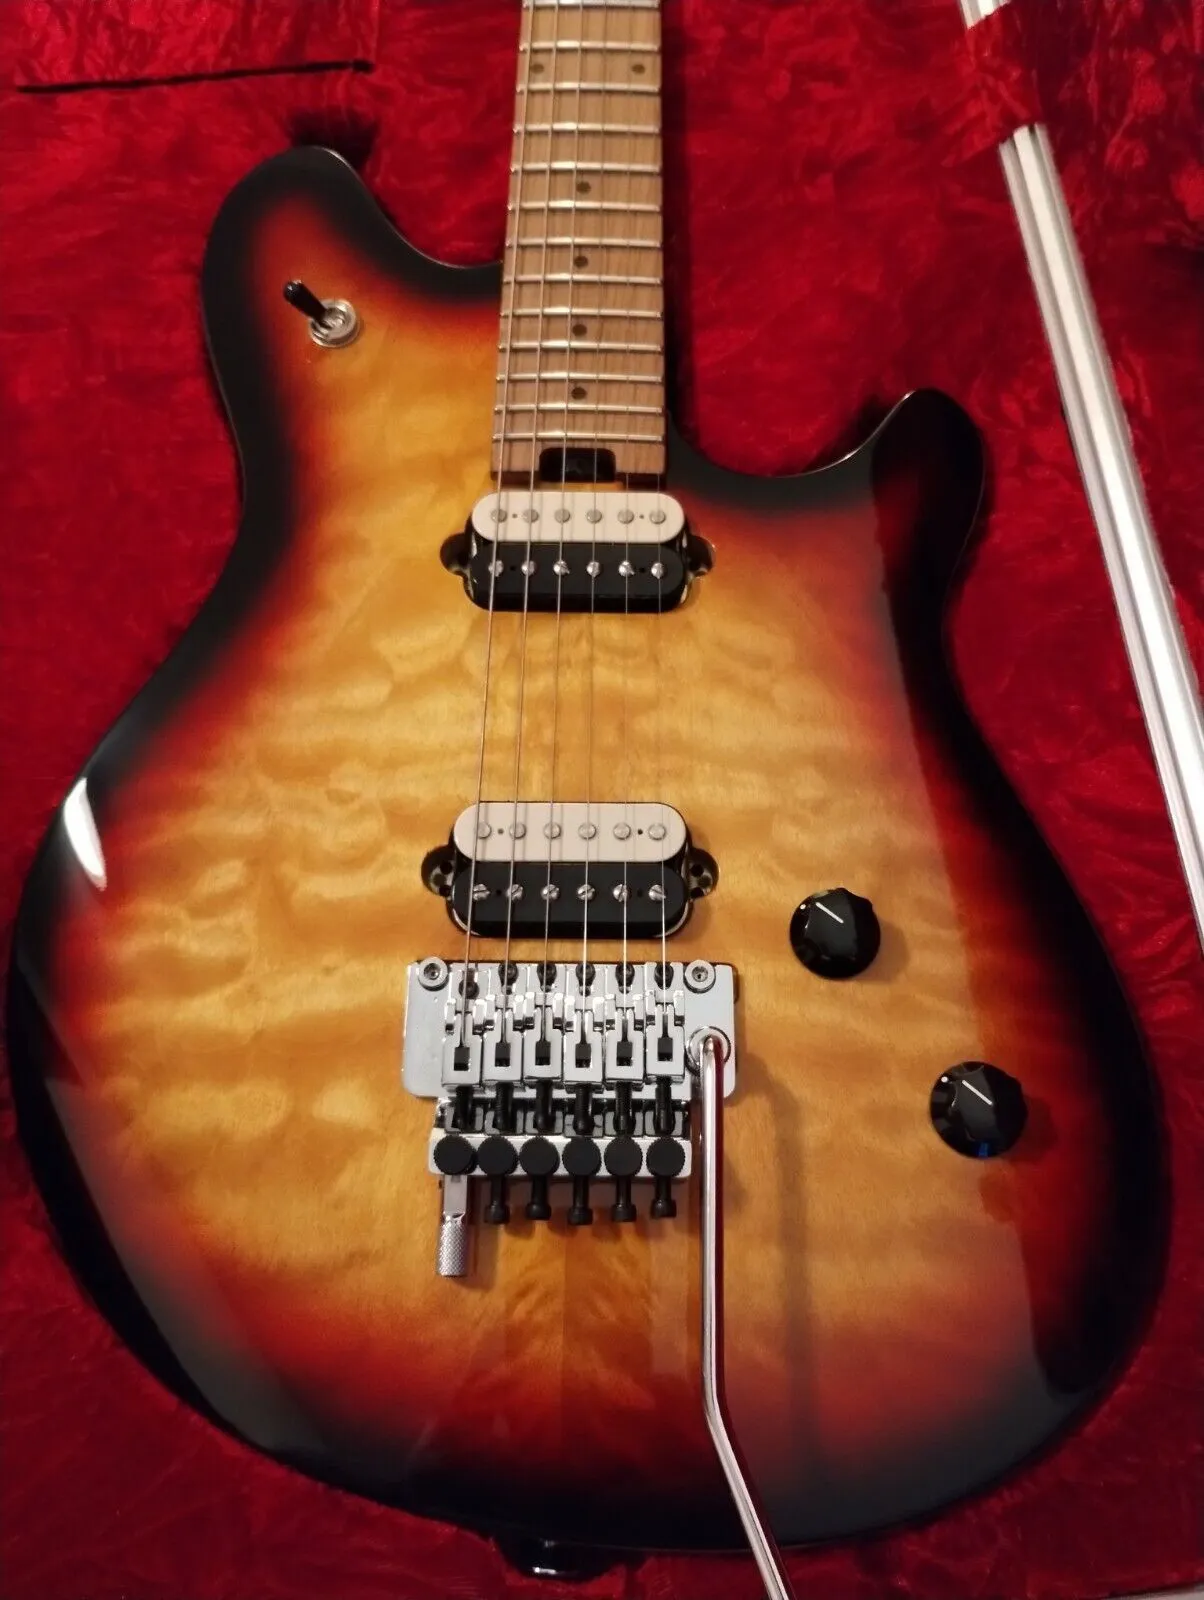 Chitarra Sunburst standard a 3 toni come la chitarra elettrica nelle immagini